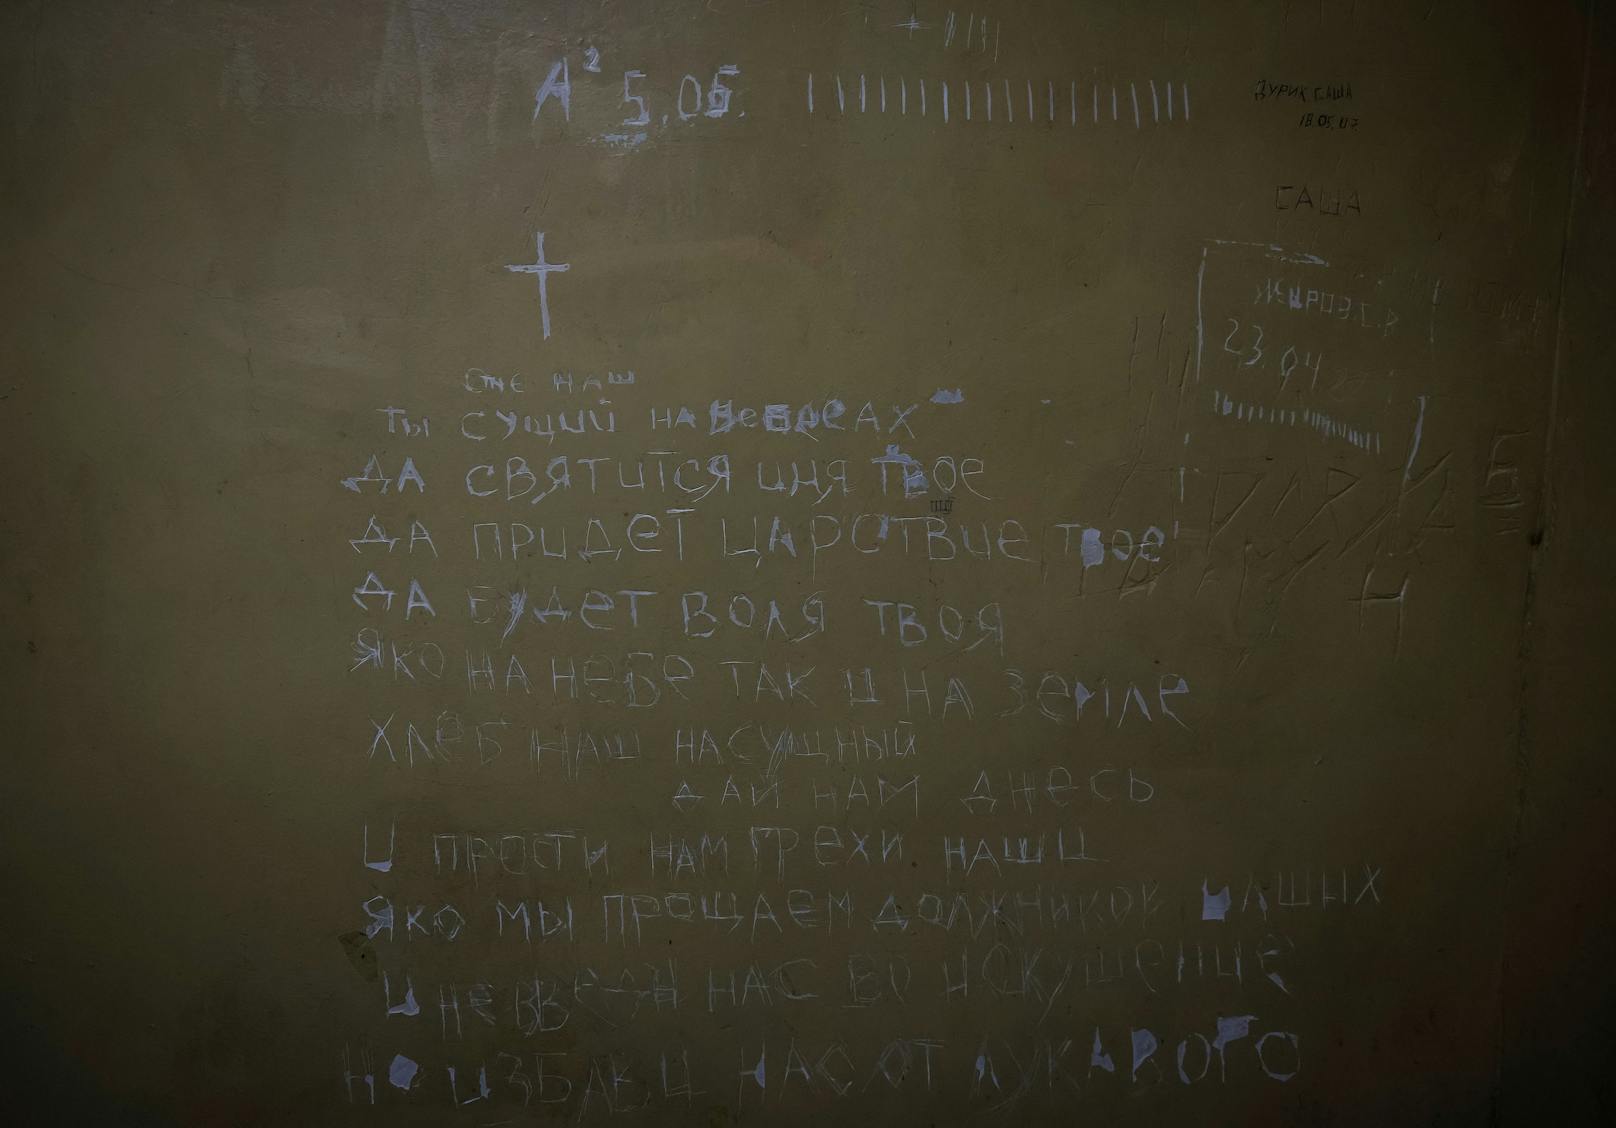 Die ukrainischen Gefangenen schrieben Gebete auf die Wand und zählten die im Keller verbrachten Tage. 